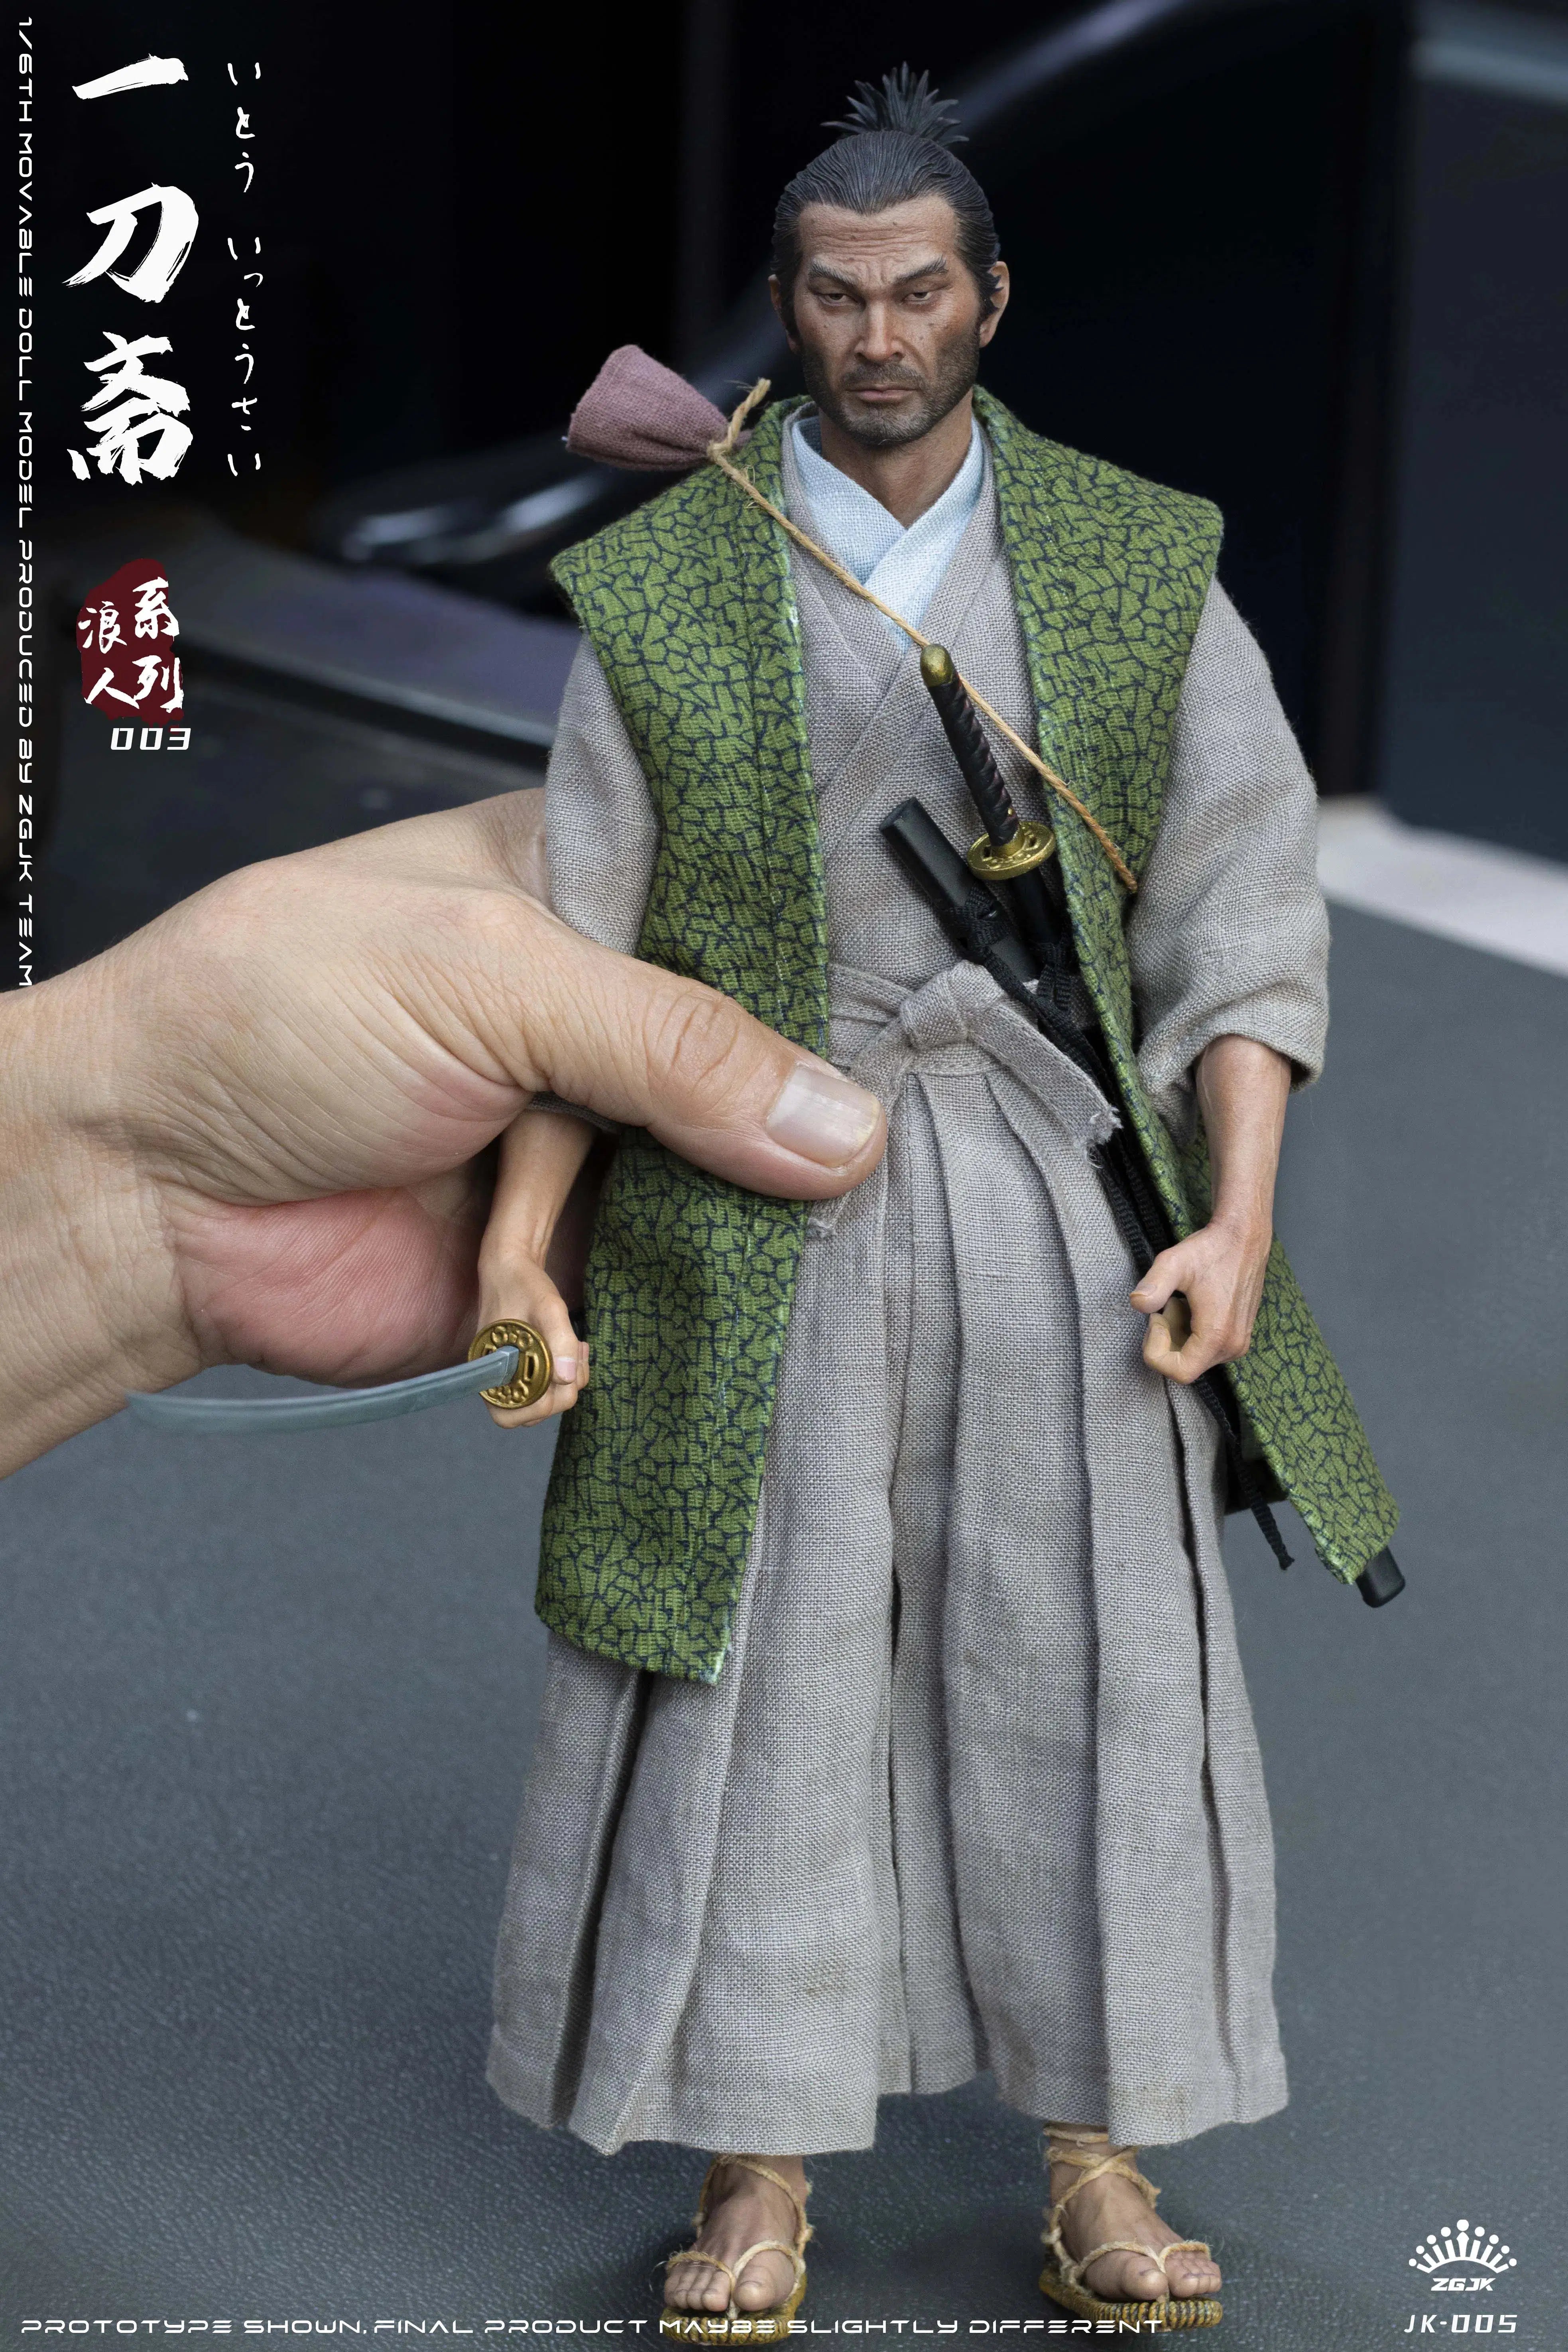 Ito Ittousai: Ronin Series: Sixth Scale Figure ZGJKTOYS